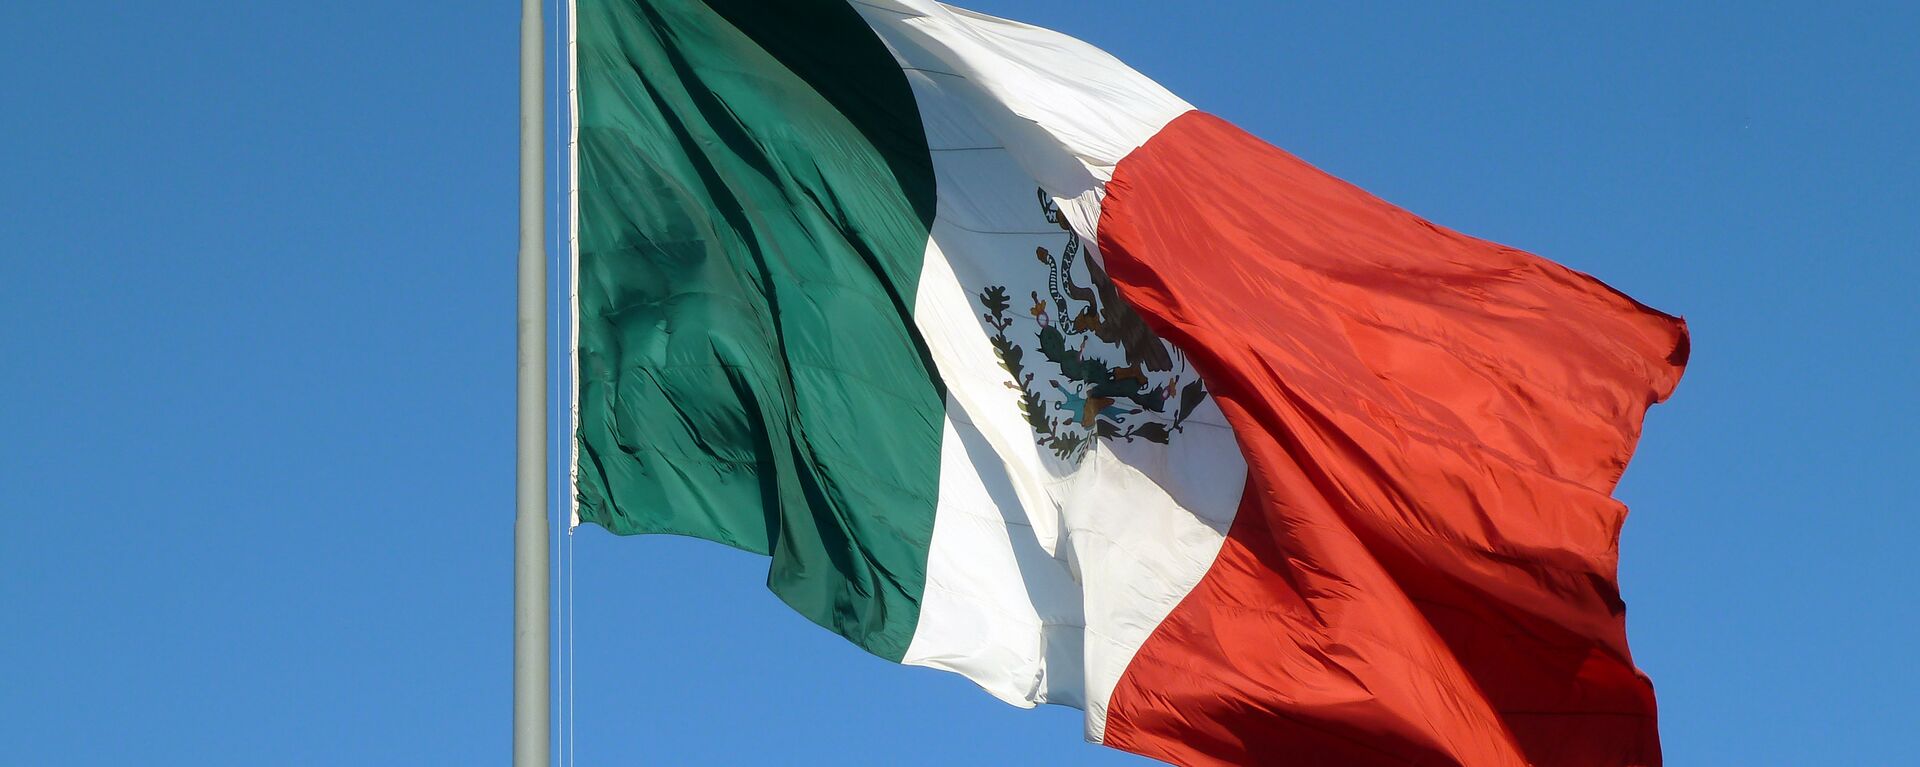 Mexico Flag - Sputnik Mundo, 1920, 17.09.2021